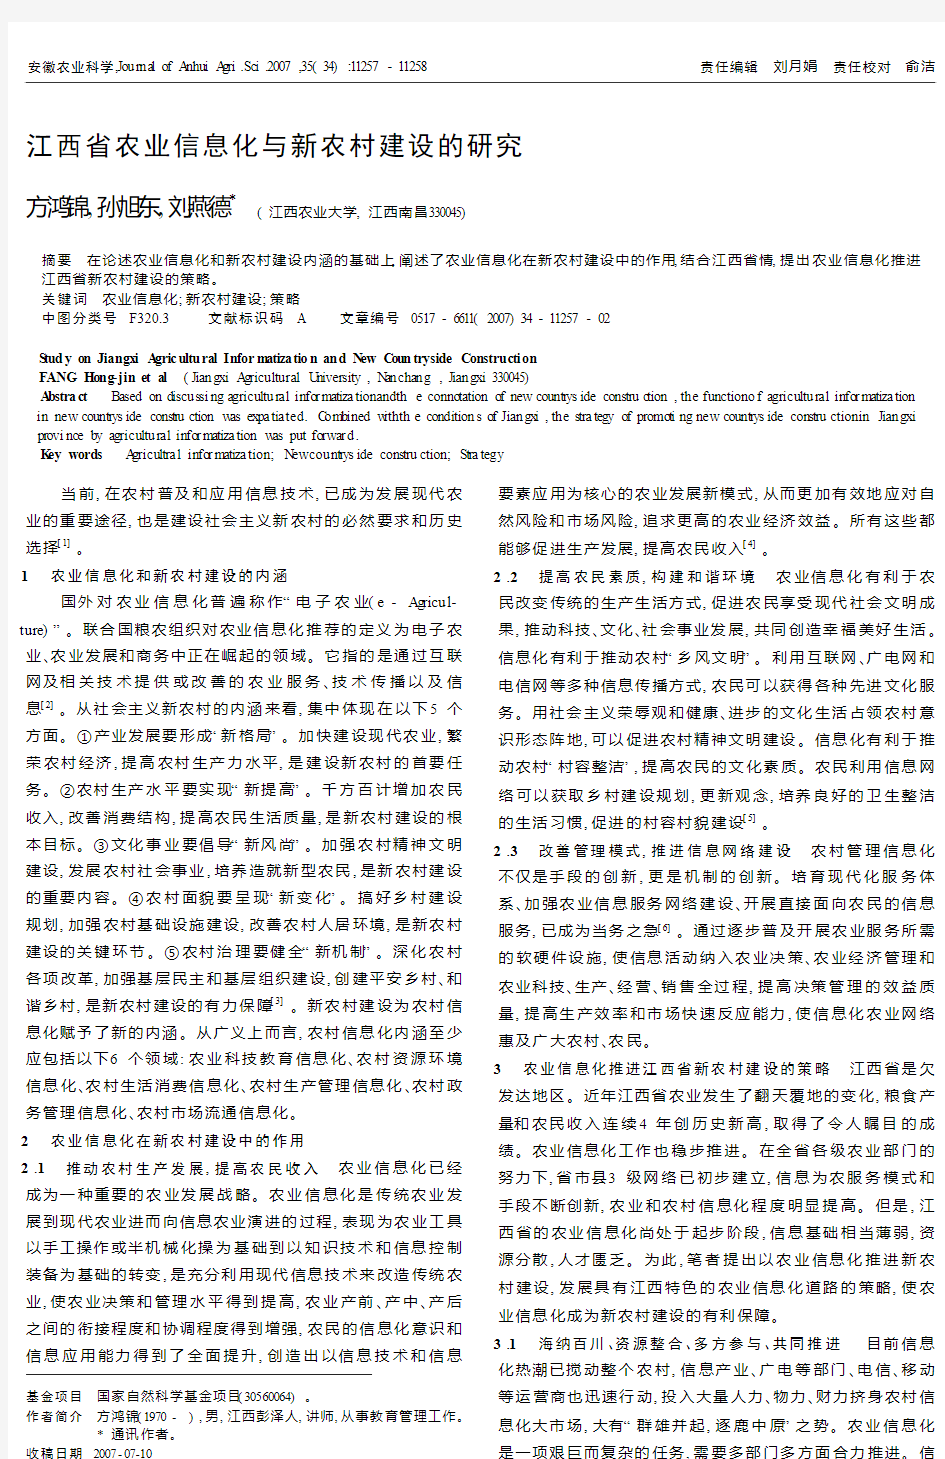 江西省农业信息化与新农村建设的研究